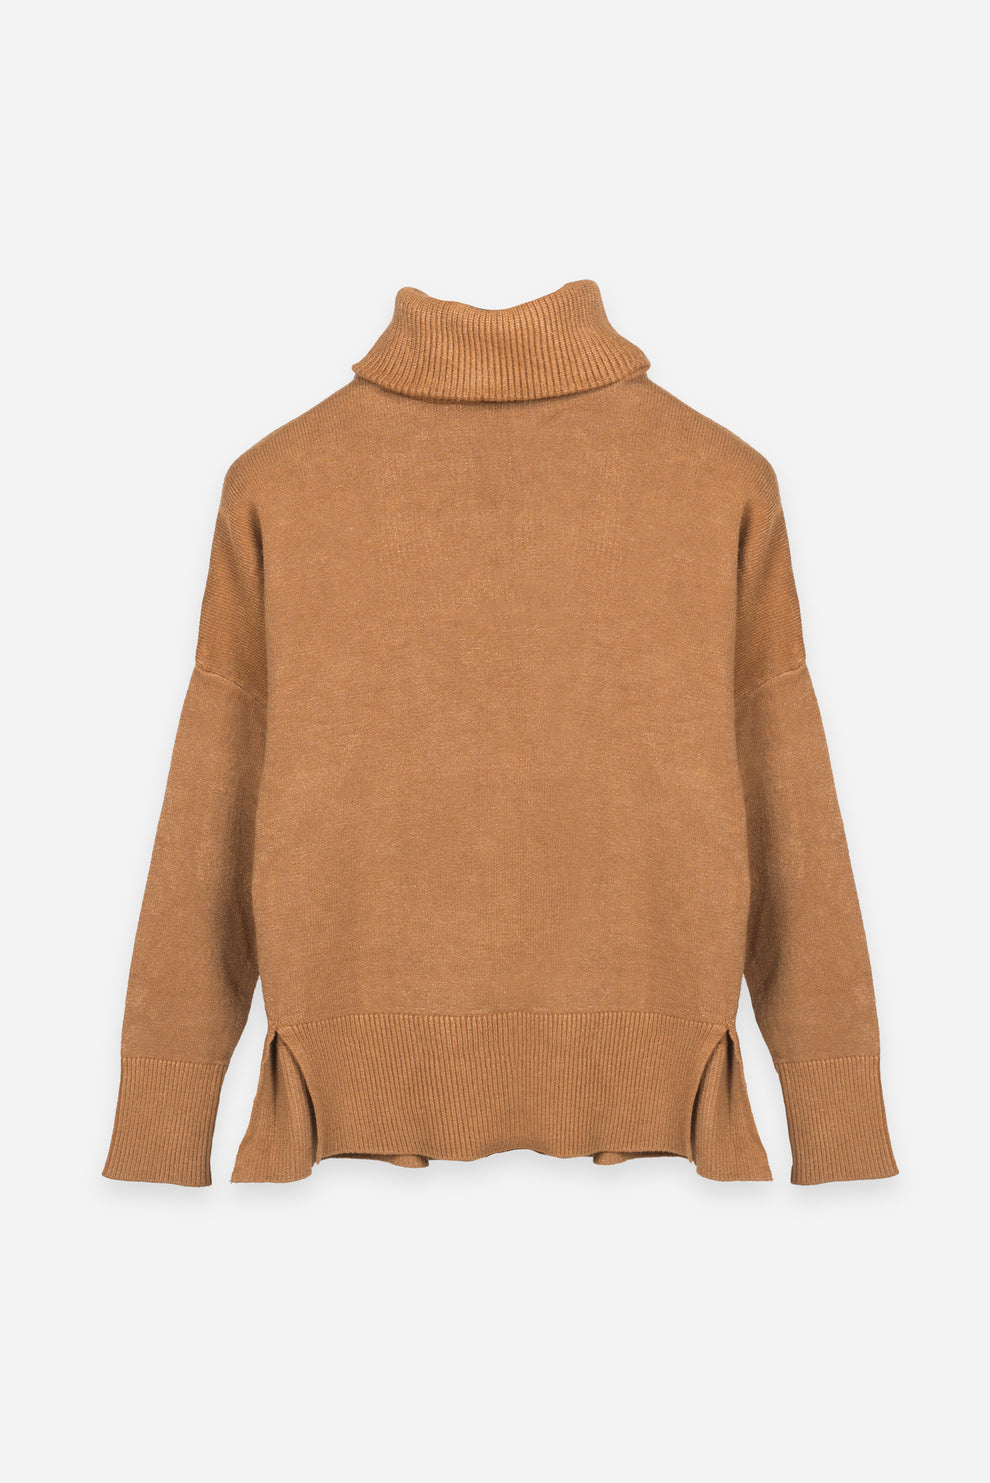 DELUC Trento Turtleneck Sweater